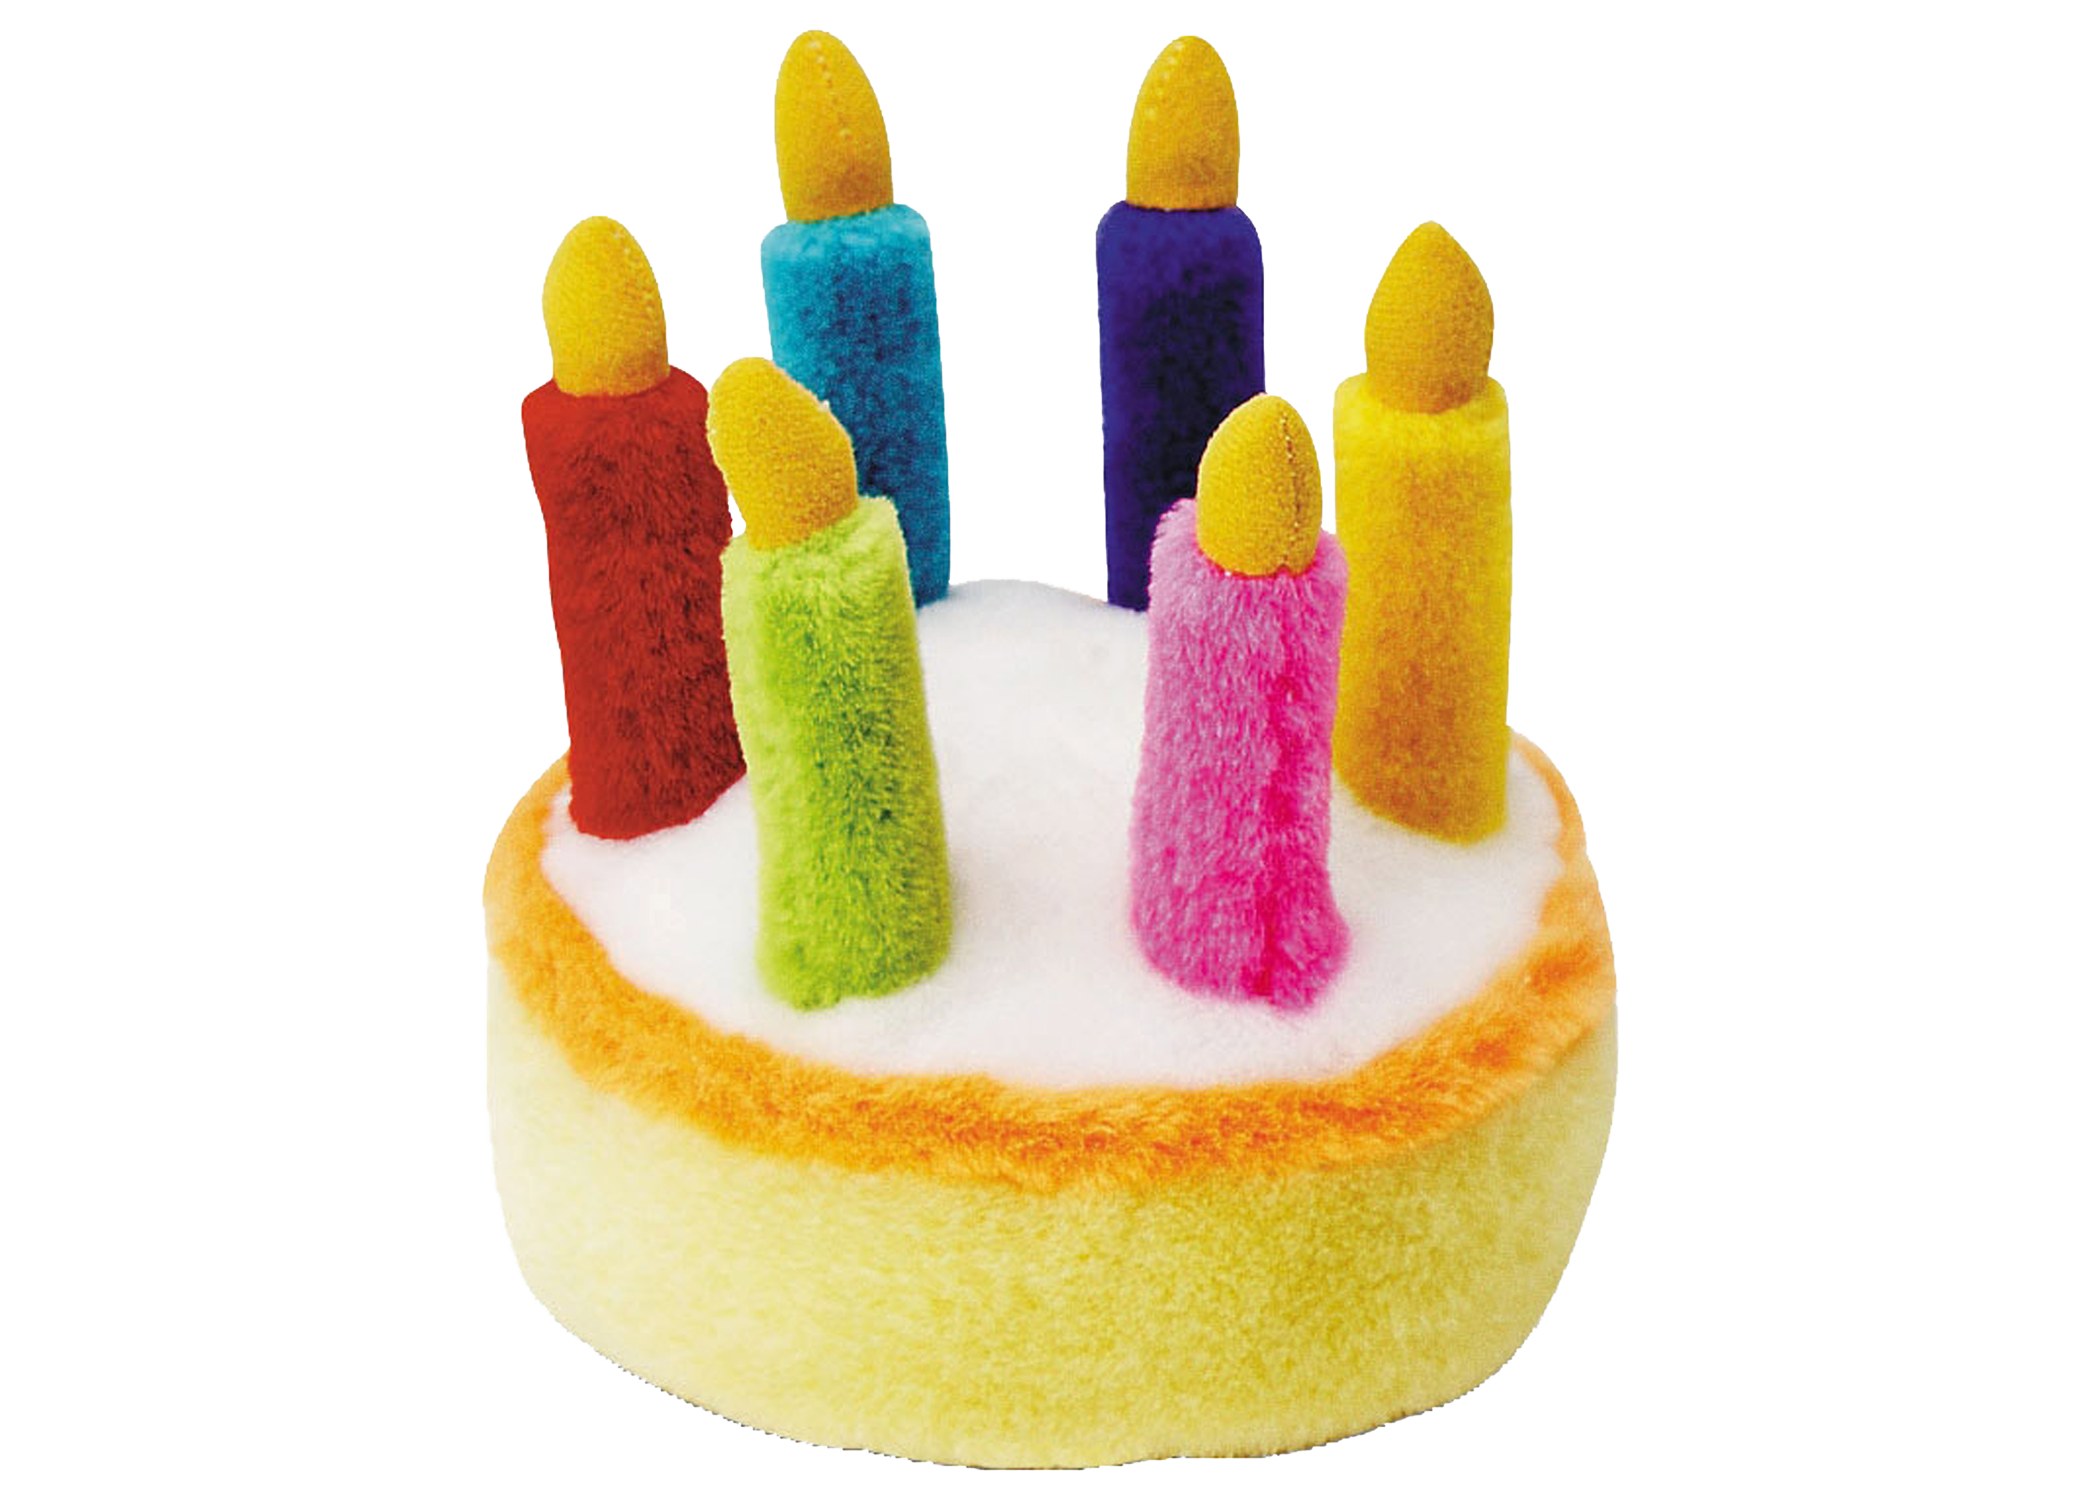 Delray Dog Birthday Cake Toy Singing Birthday Cake  Musical Dog Toy